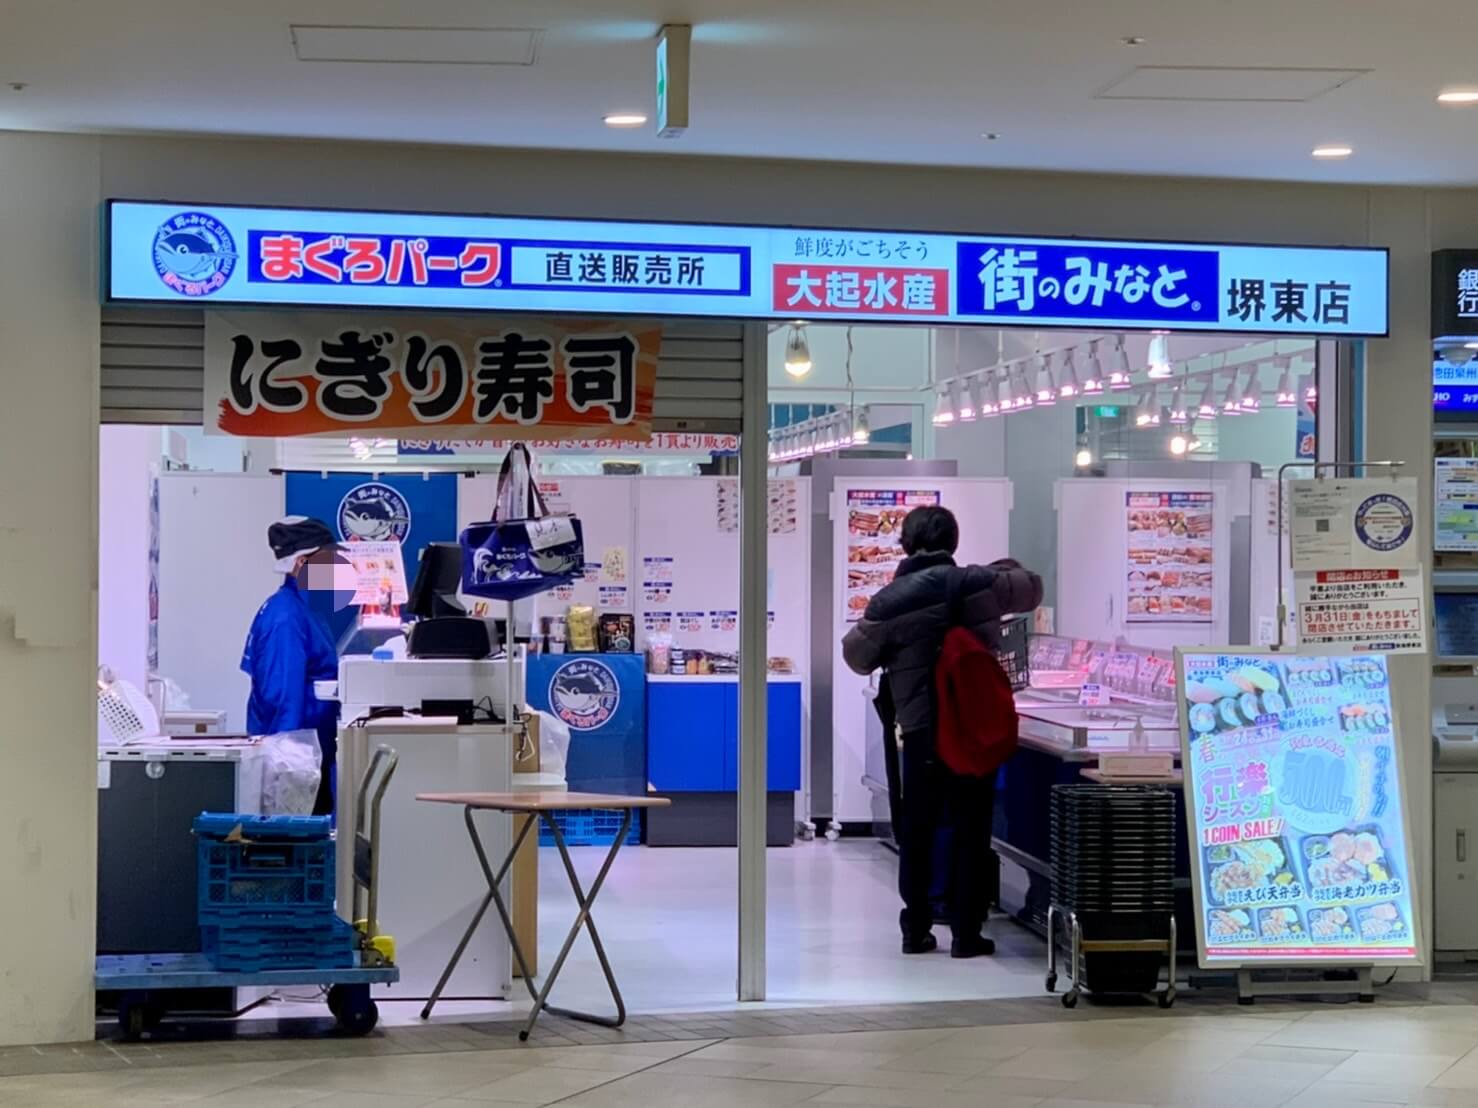 【閉店】堺市堺区･堺東駅改札出てすぐのテイクアウト専門店『大起水産 街のみなと』が閉店されるようです…。：